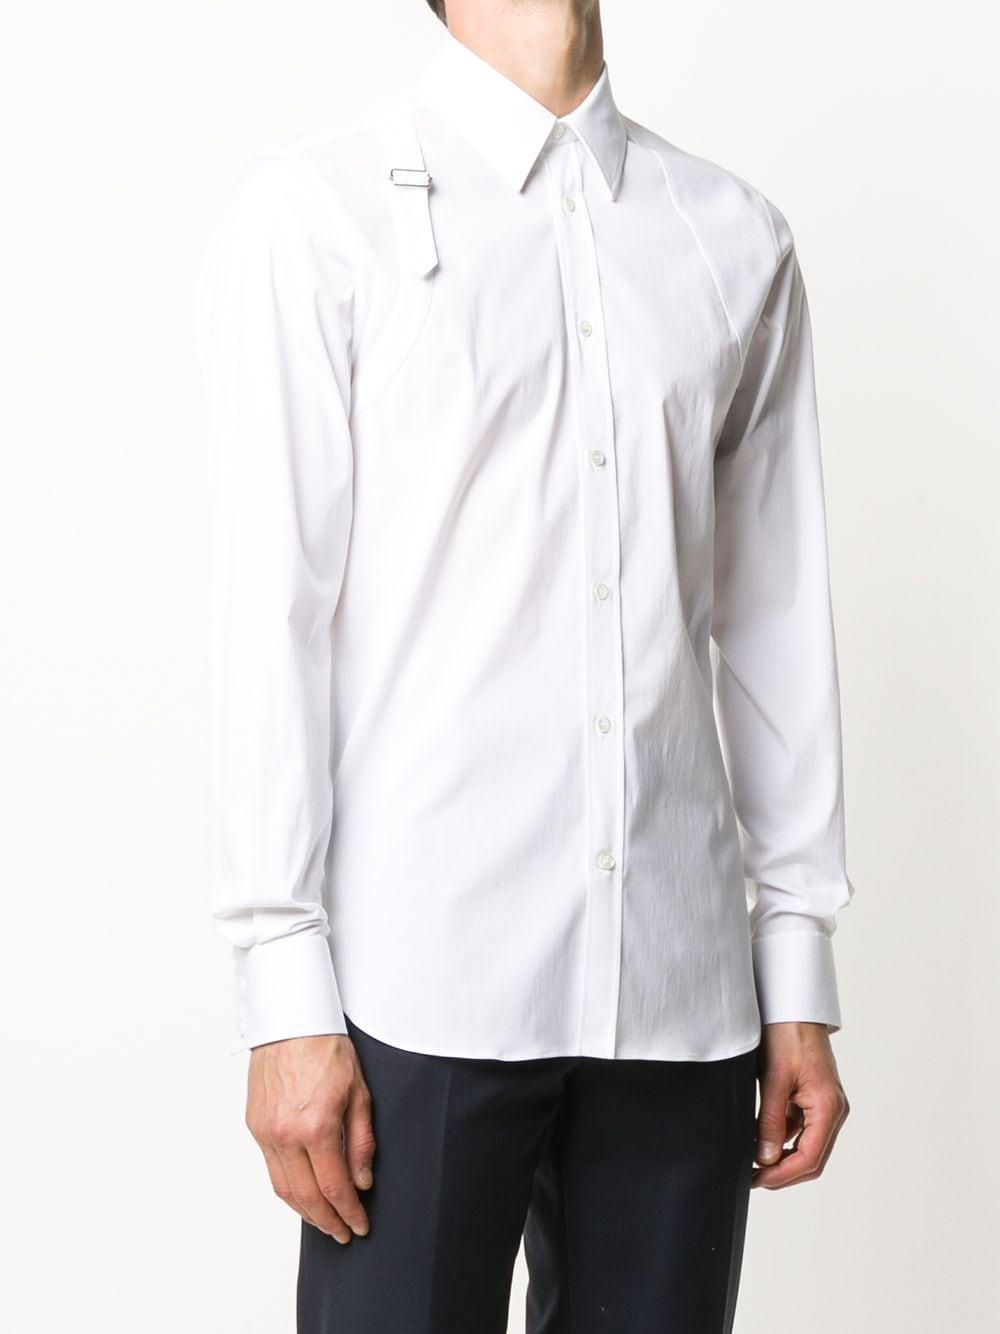 Alexander McQueen Cotton Strap Detail Shirt in White for Men - Lyst